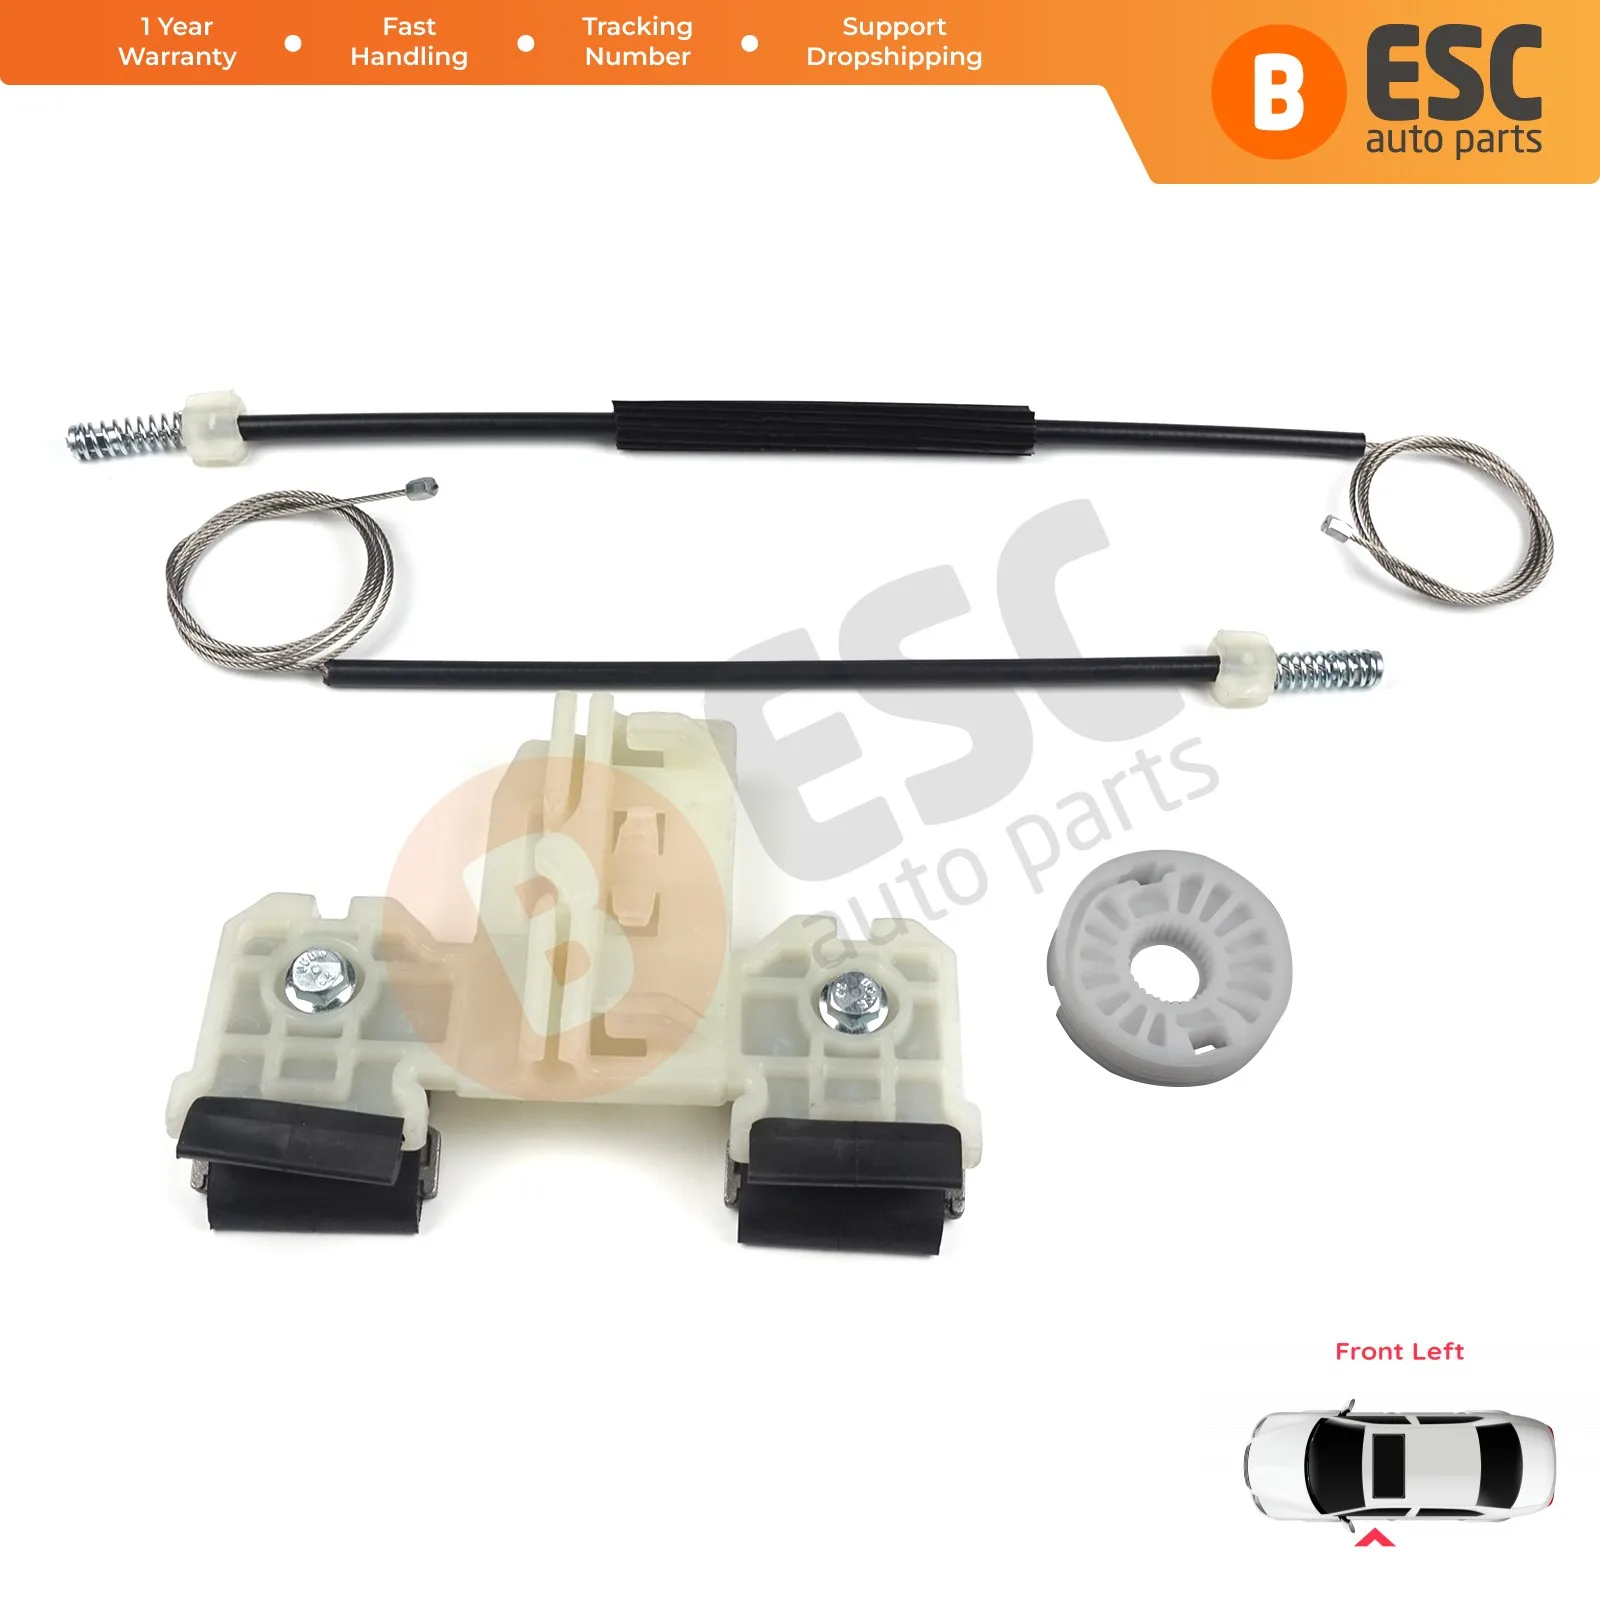 

ESC Auto Parts EWR5074 Electrical Power Window Regulator Repair Kit Front Left Door Side for Skoda Fabia 5J MG 2008-2014